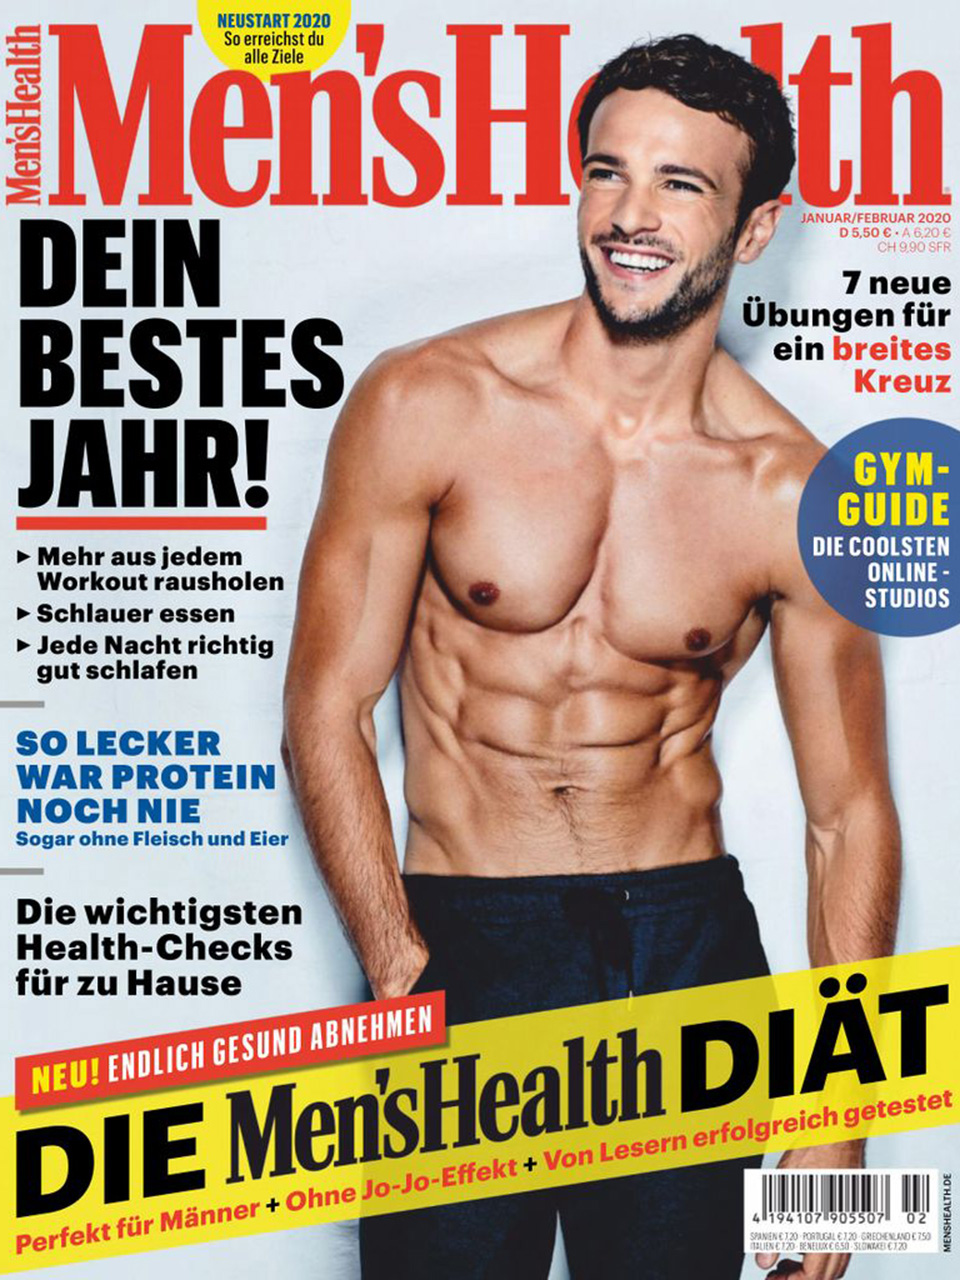 Njemačko izdanje časopisa Men's Health. 